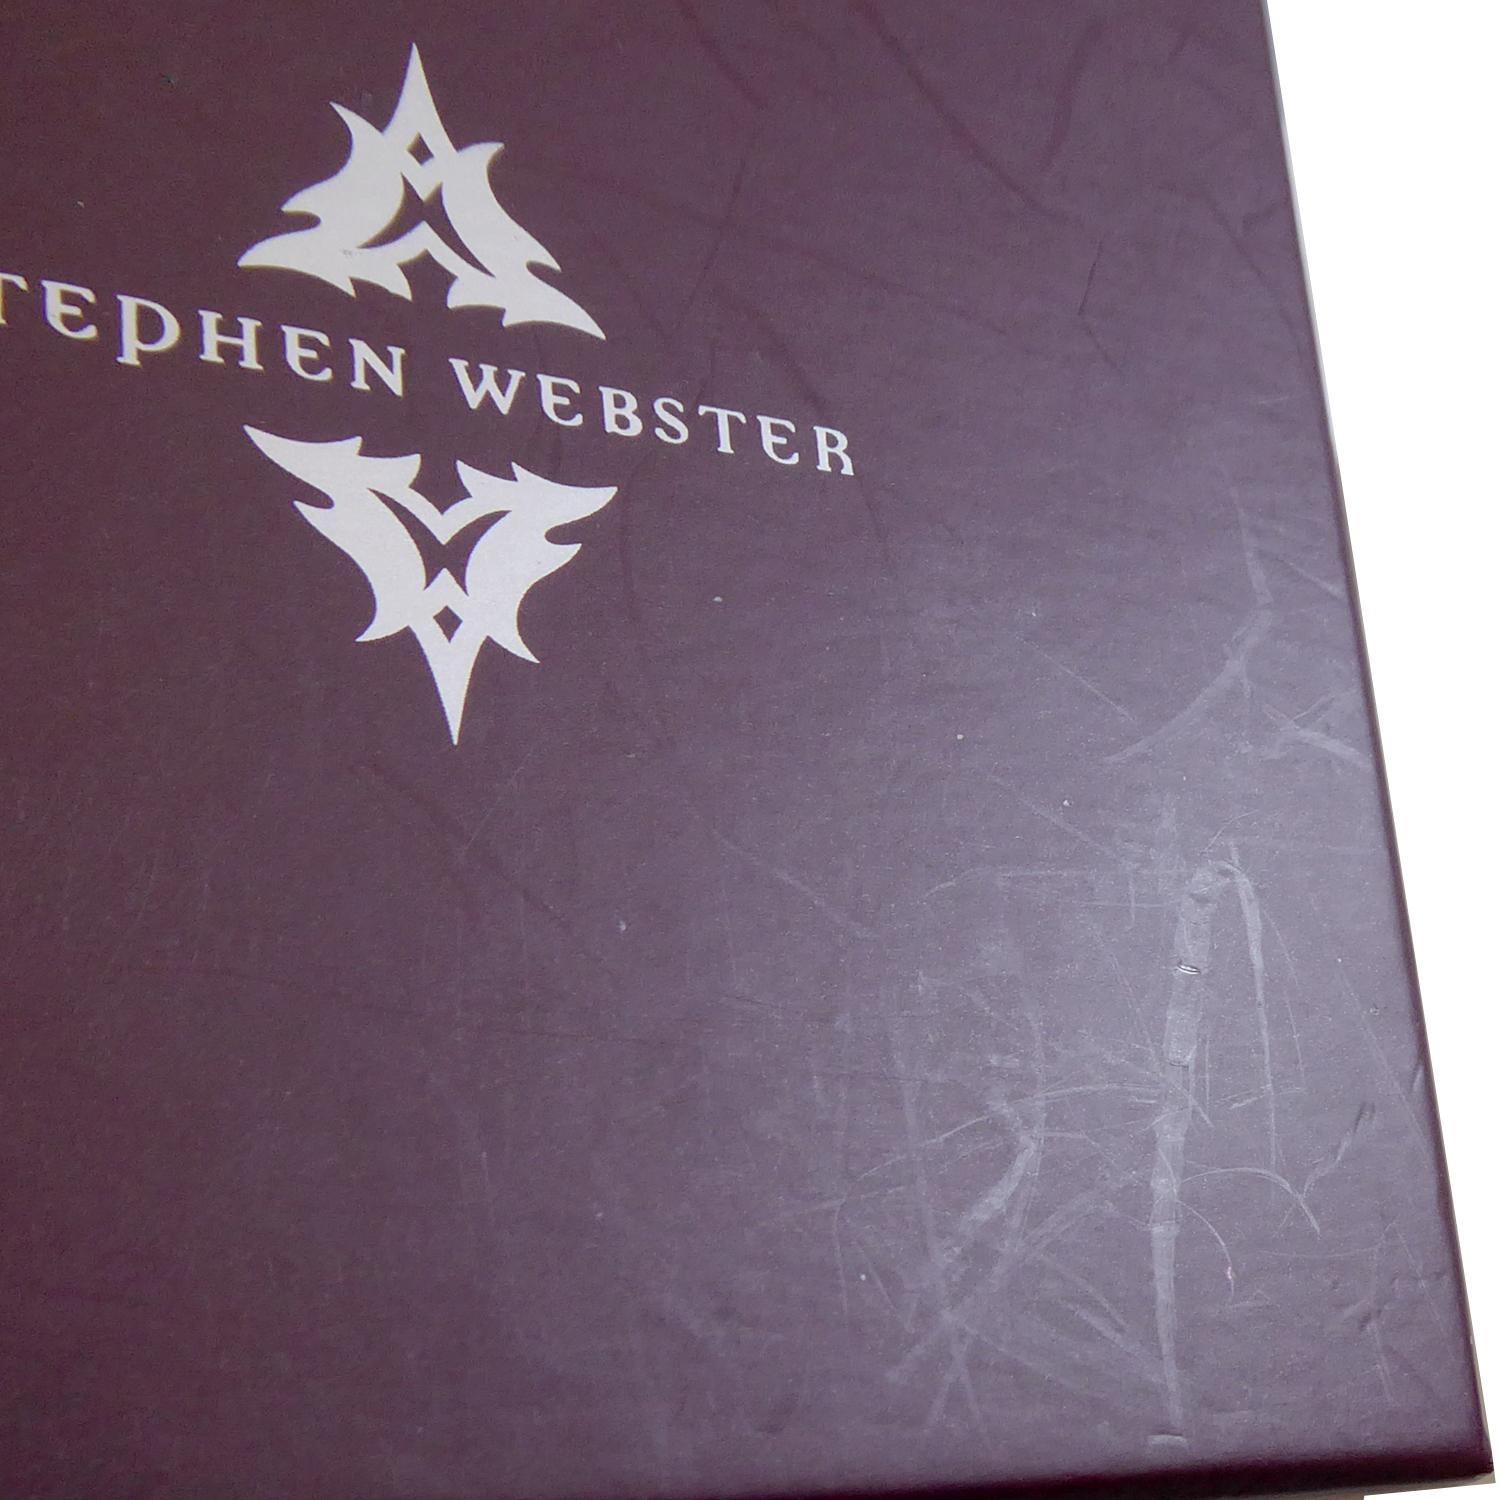 Contemporary Cufflinks by British Jewelry Designer Stephen Webster, White Gold 6